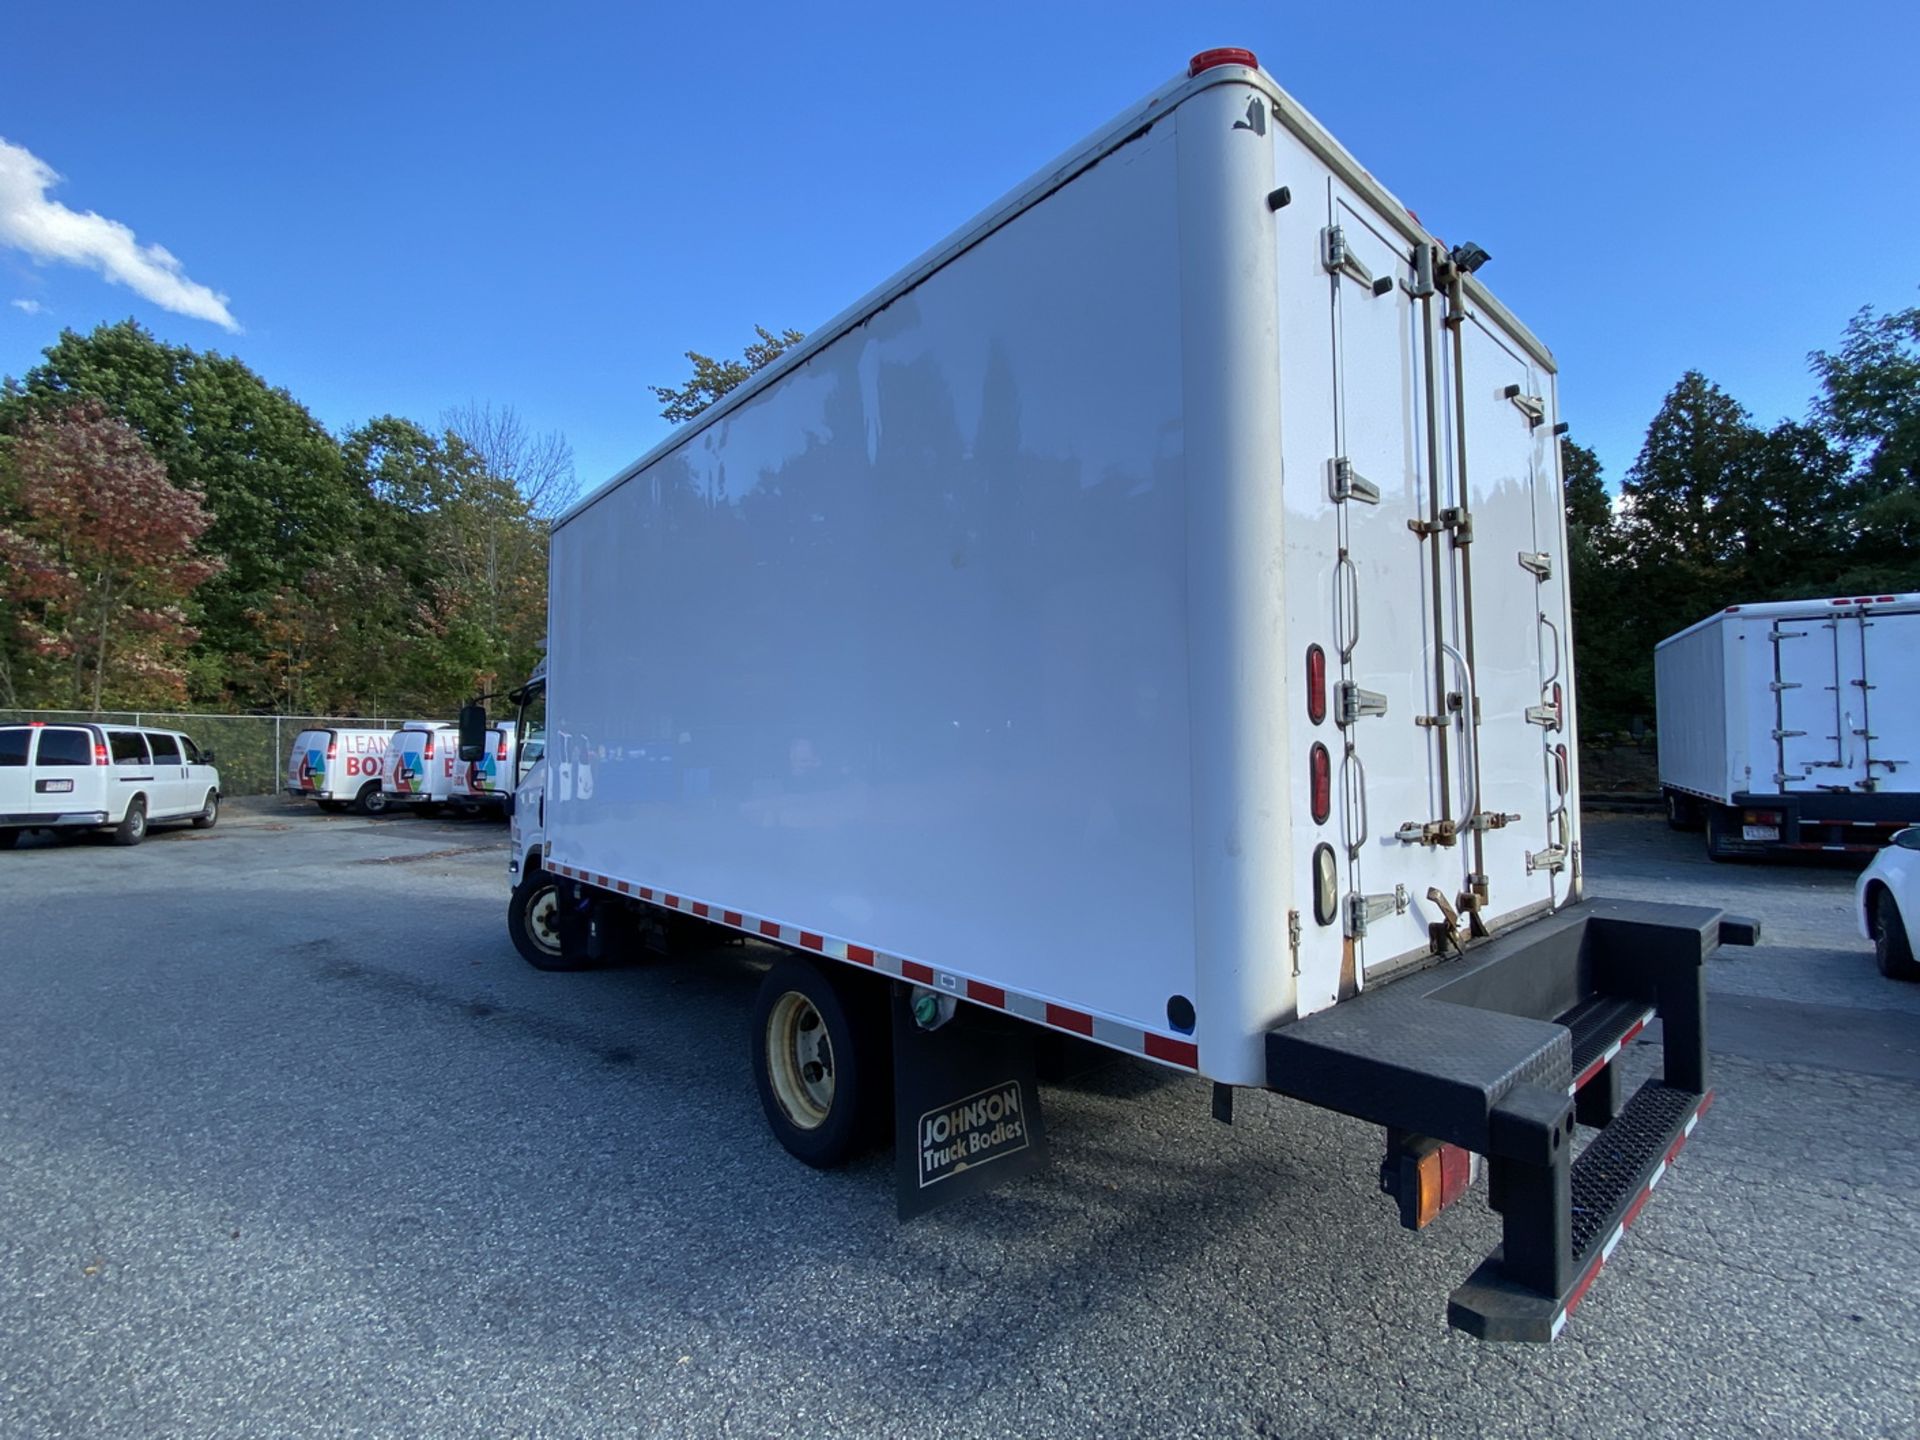 2013 Isuzu refrigerated truck - Image 3 of 8